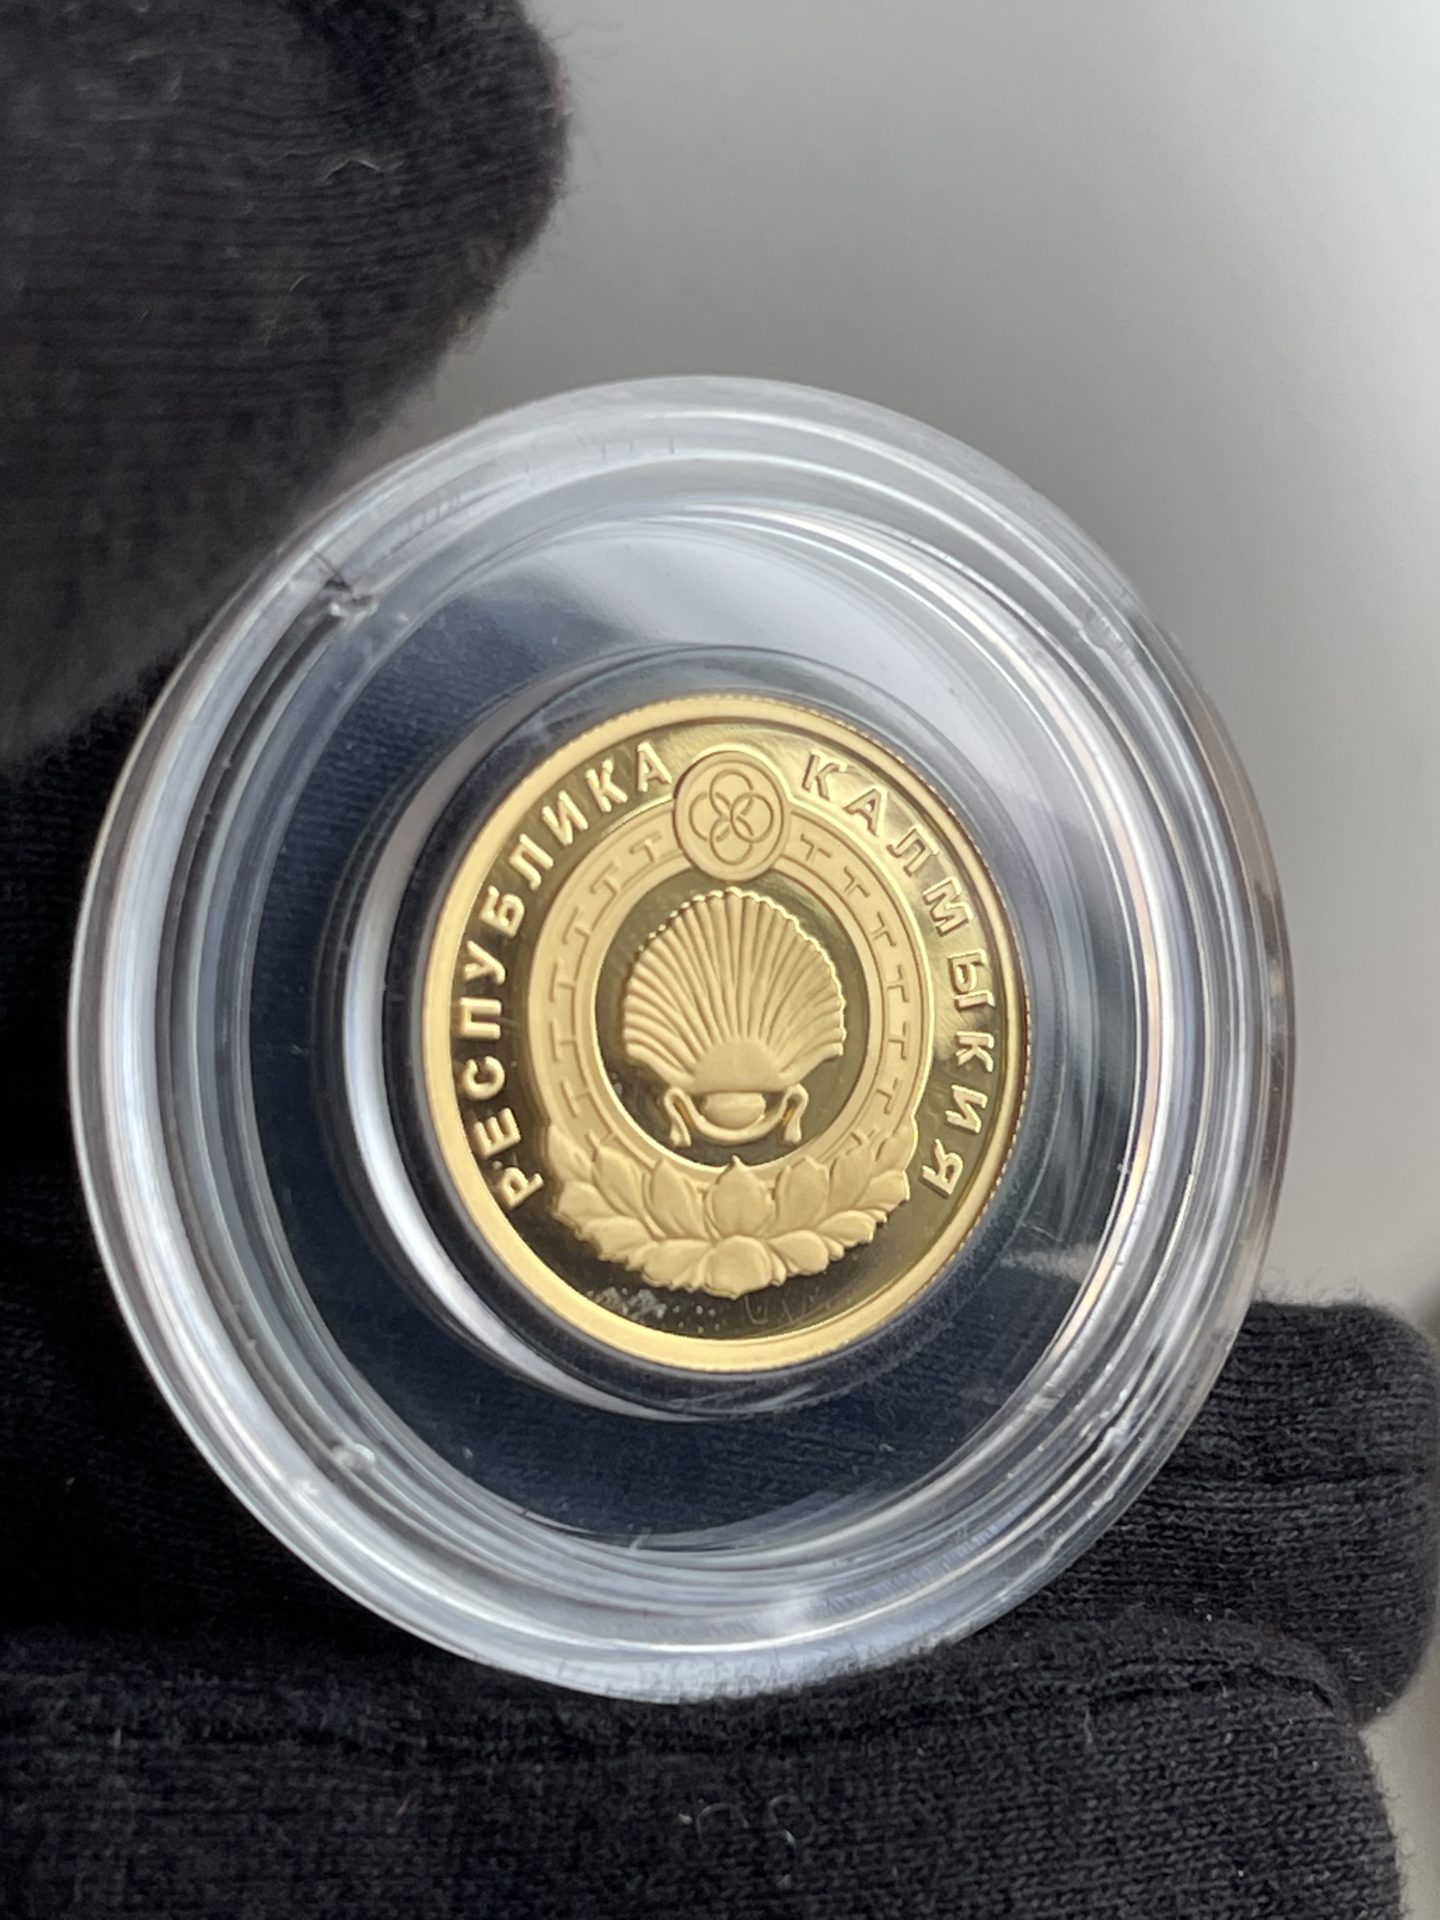 50 Gold Rubel Kalmykien 2009